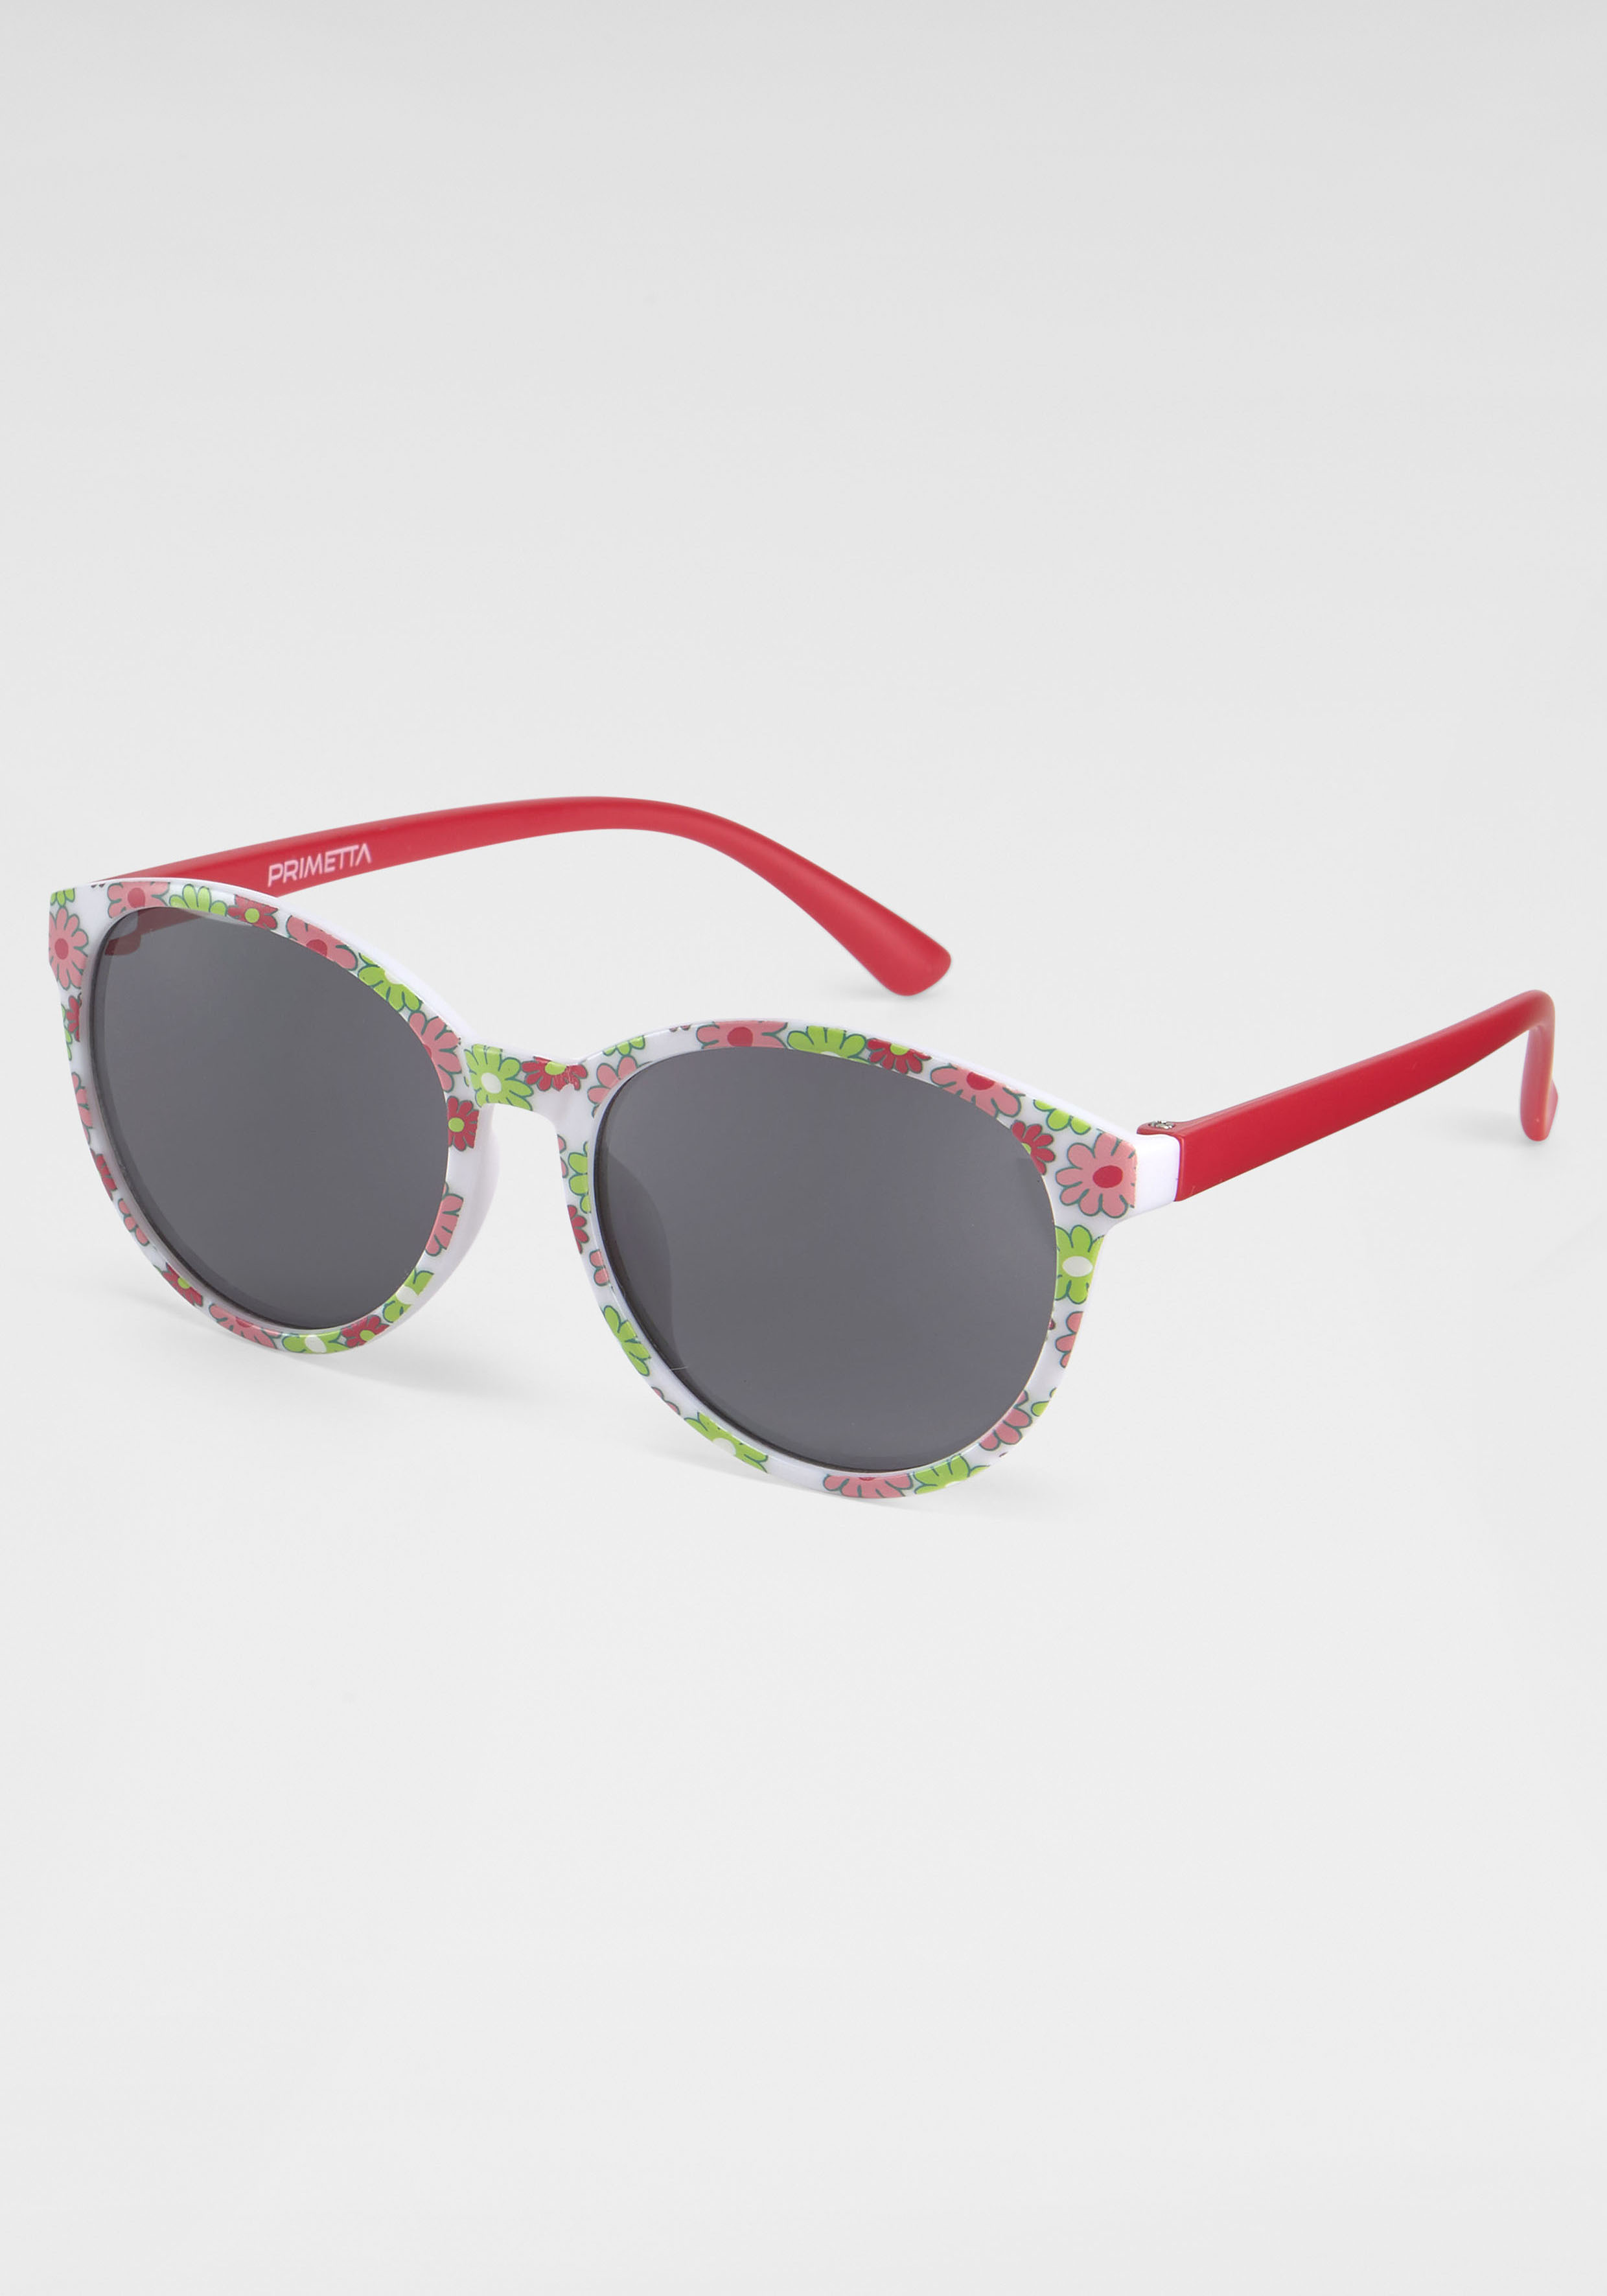 Eyewear mit Flamingos Sonnenbrille, bei PRIMETTA